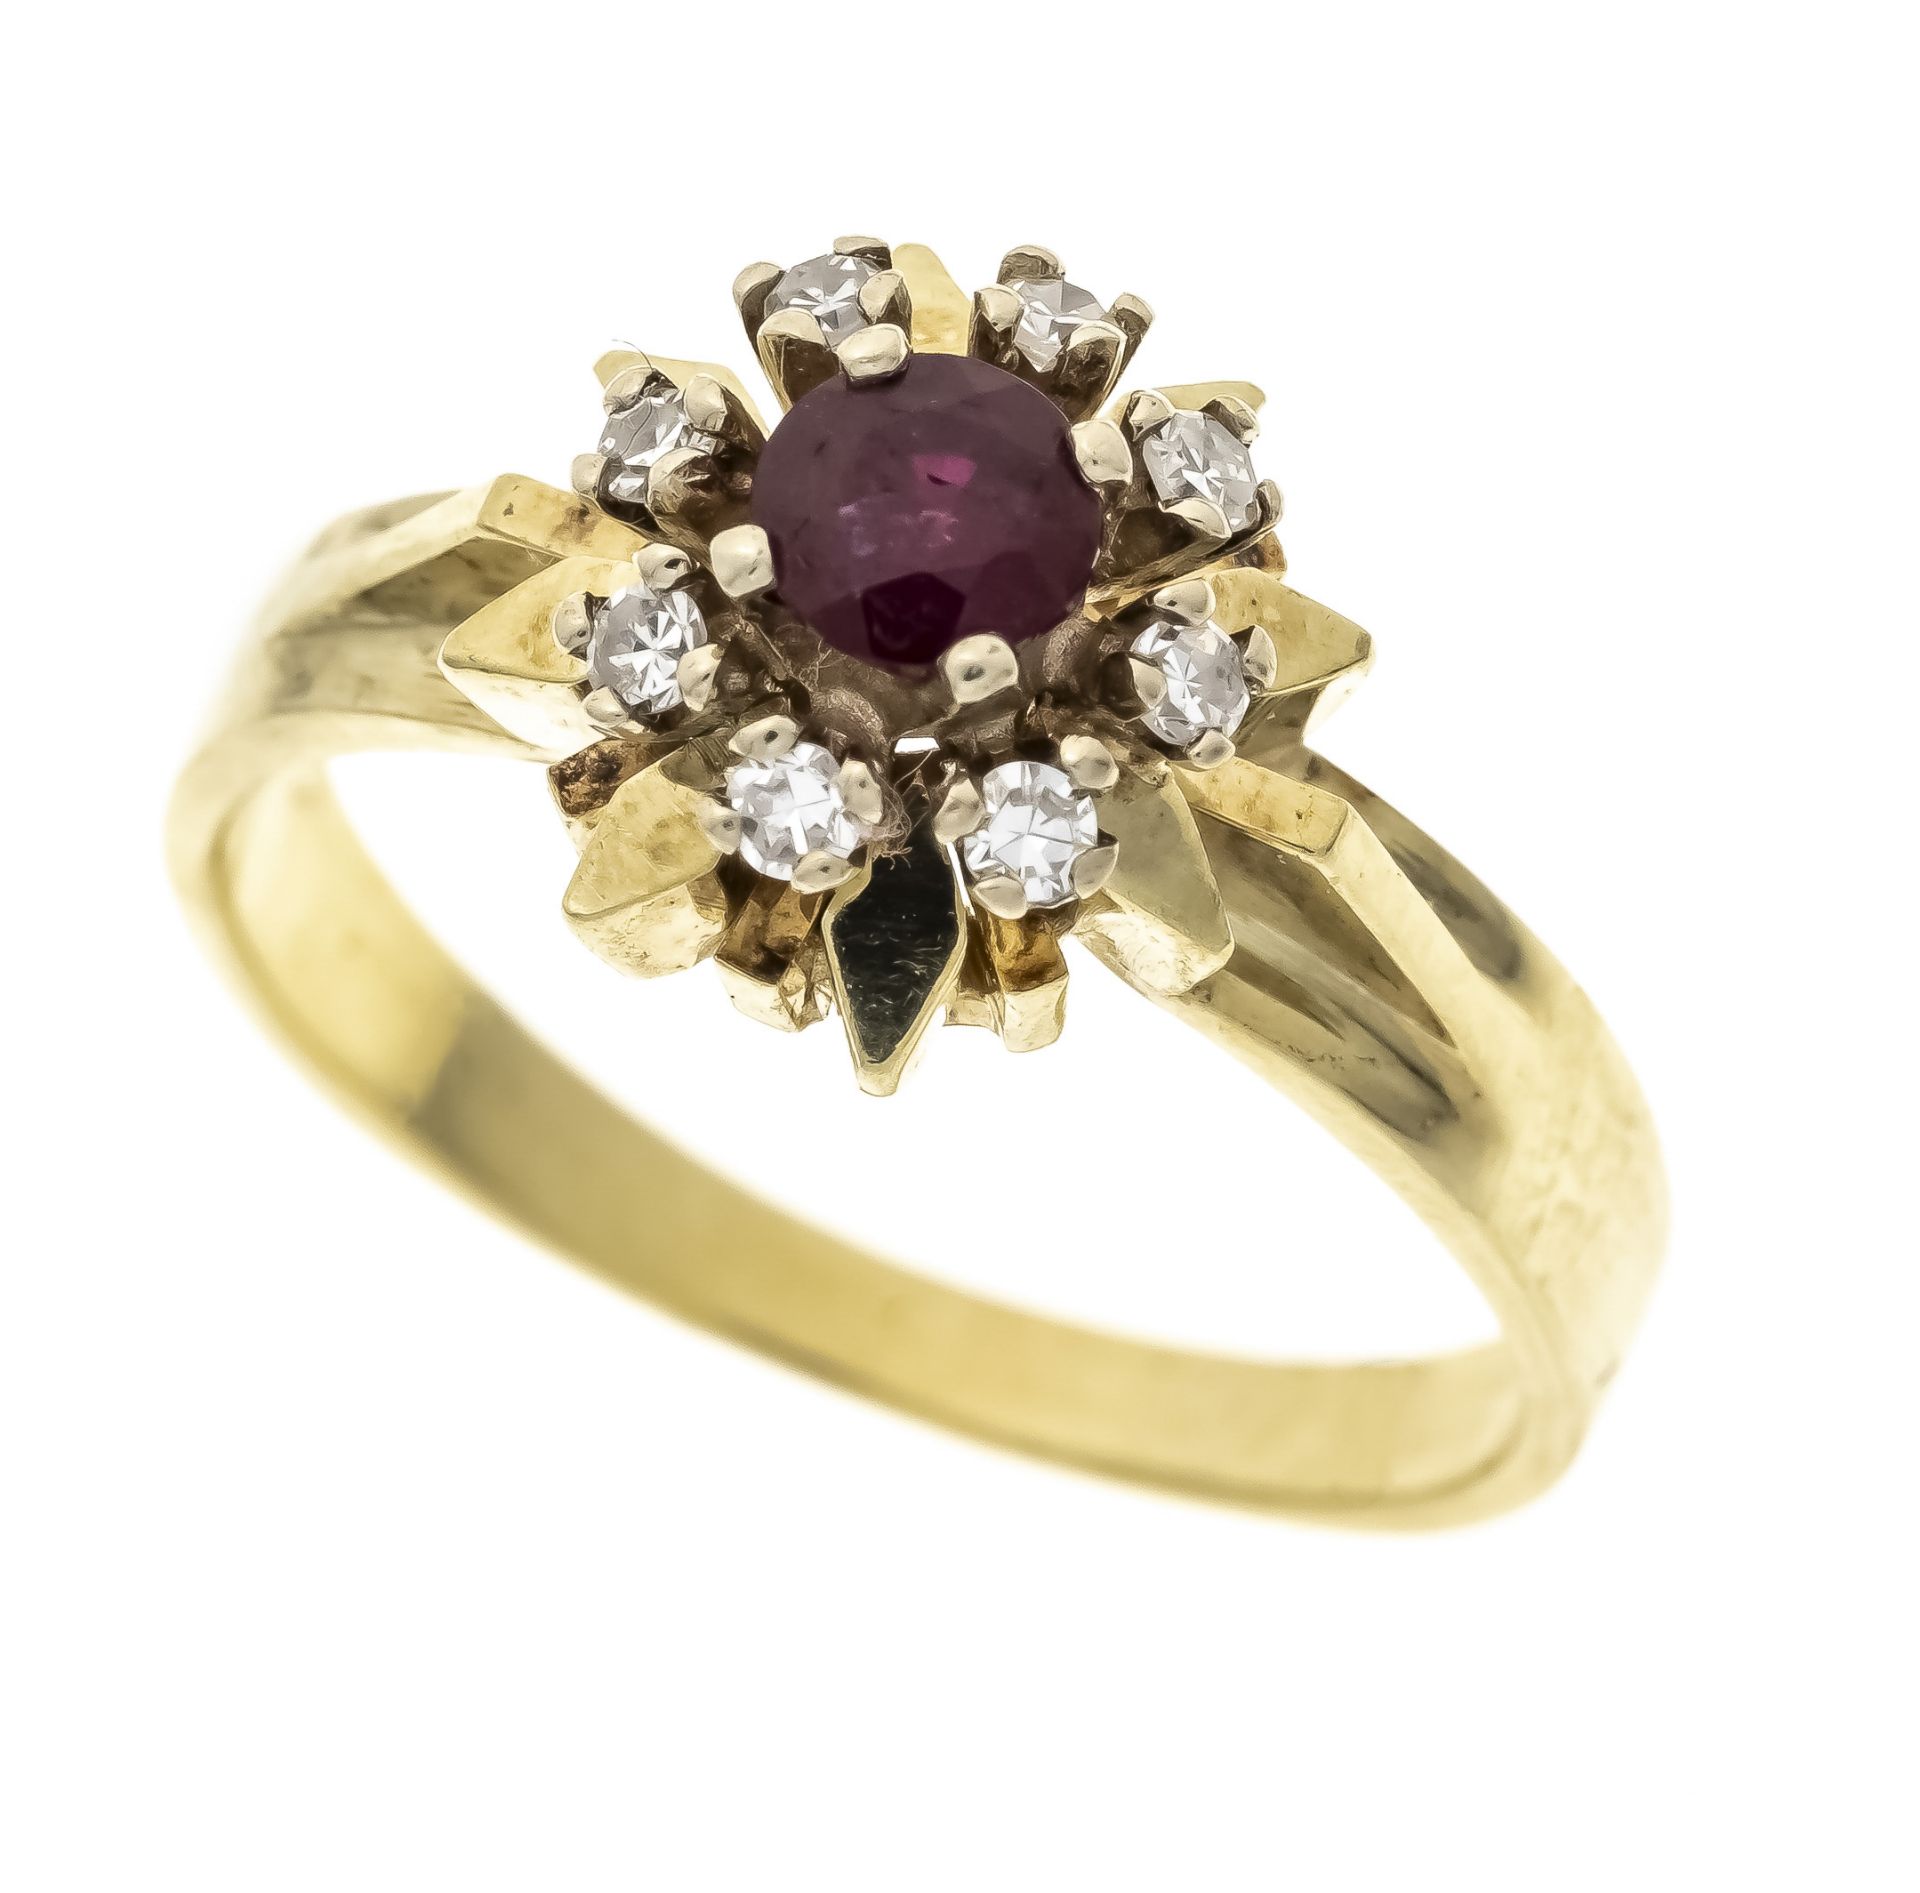 Rubin-Diamant-Ring GG 585/000 u